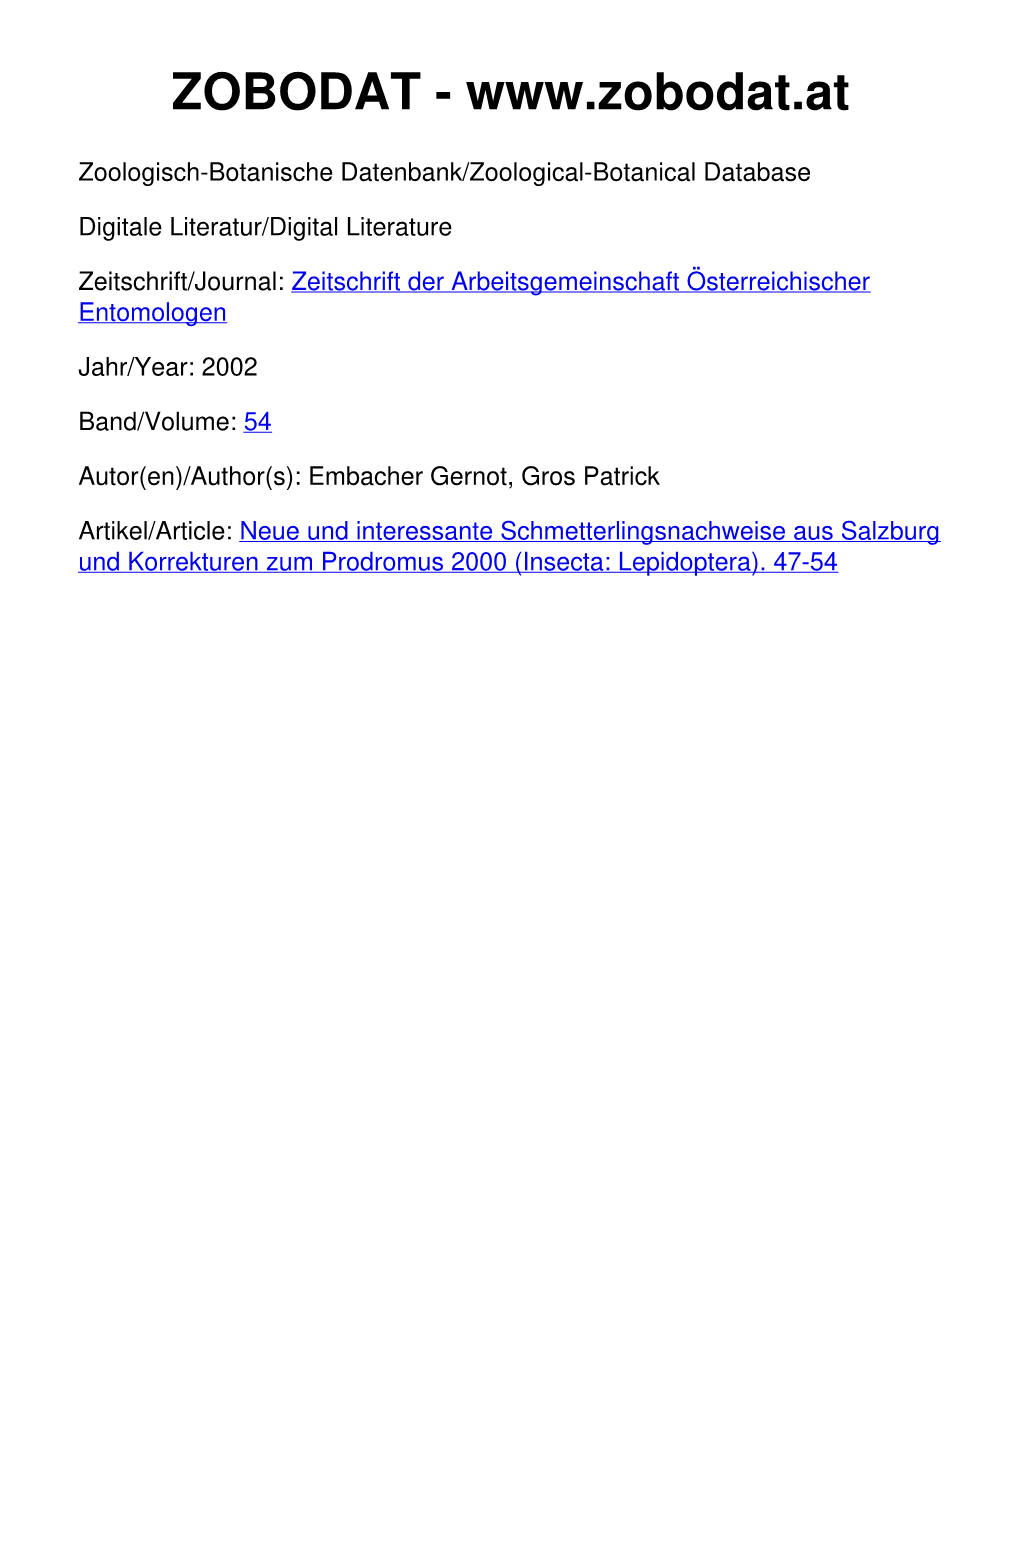 Neue Und Interessante Schmetterlingsnachweise Aus Salzburg Und Korrekturen Zum Prodromus 2000 (Insecta: Lepidoptera)